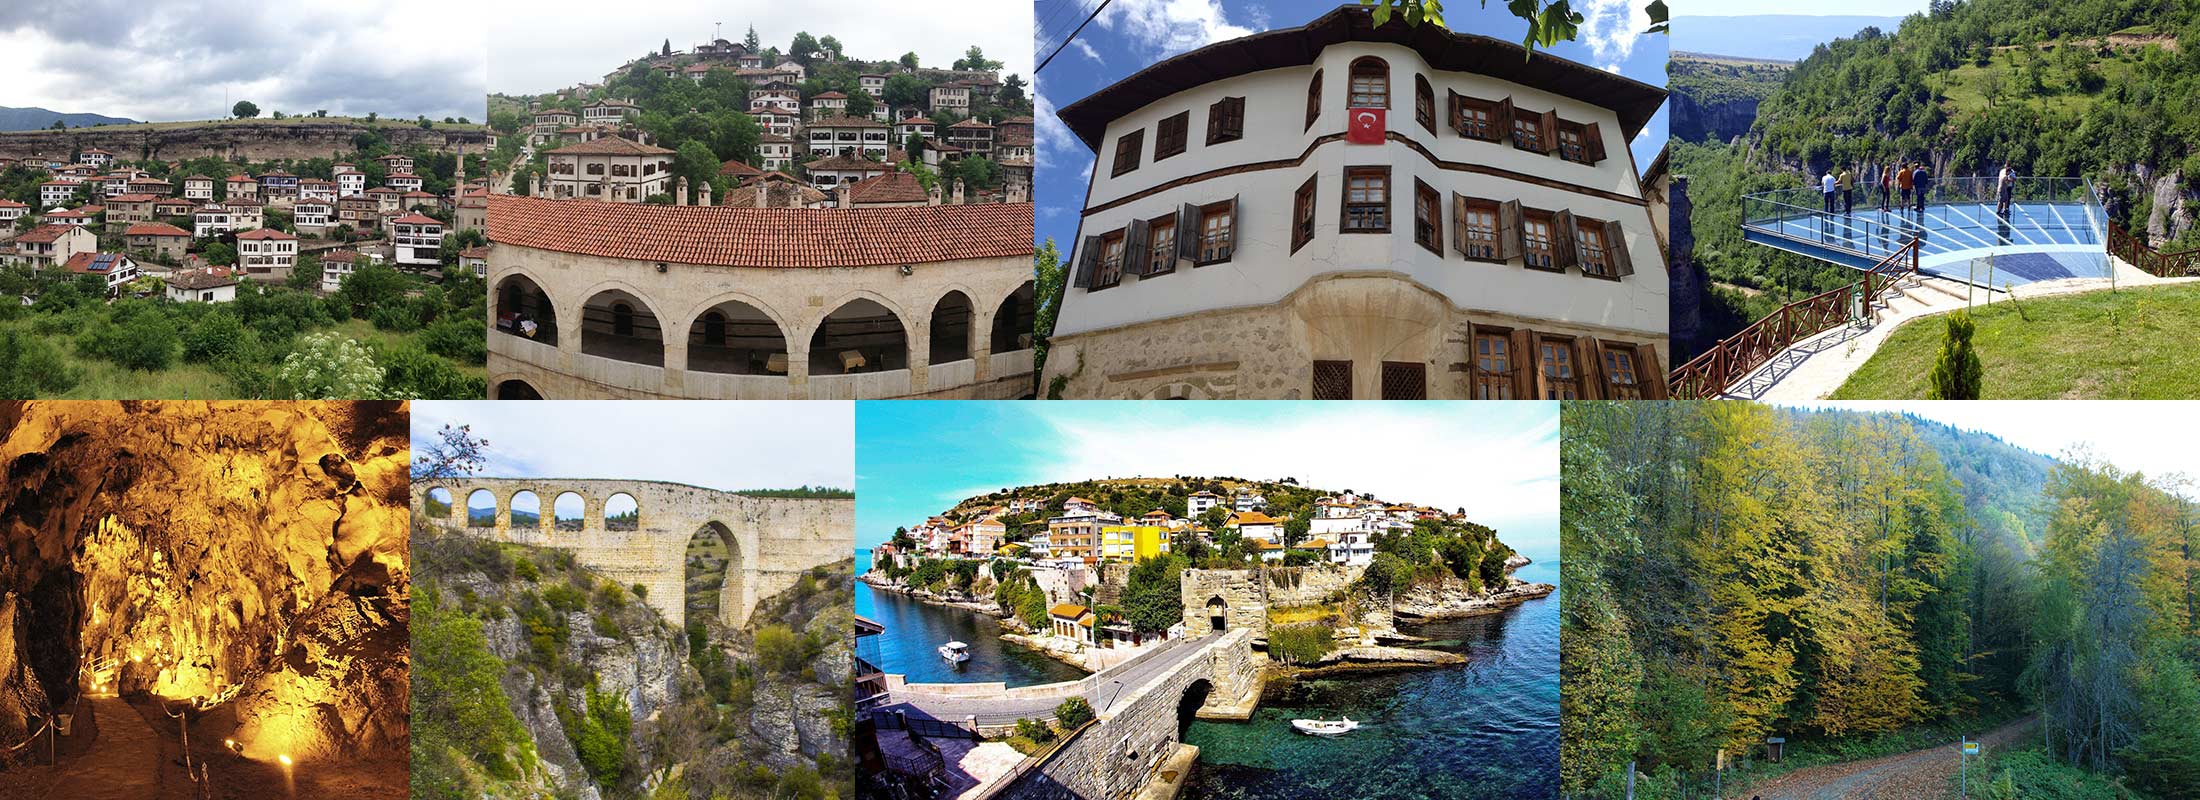 4-days-turkey-black-sea-tour-safranbolu-yoruk-village-incekaya-aqueduck-bulak-cave-CRYSTAL-TERRACE-yenice-forest-amasra